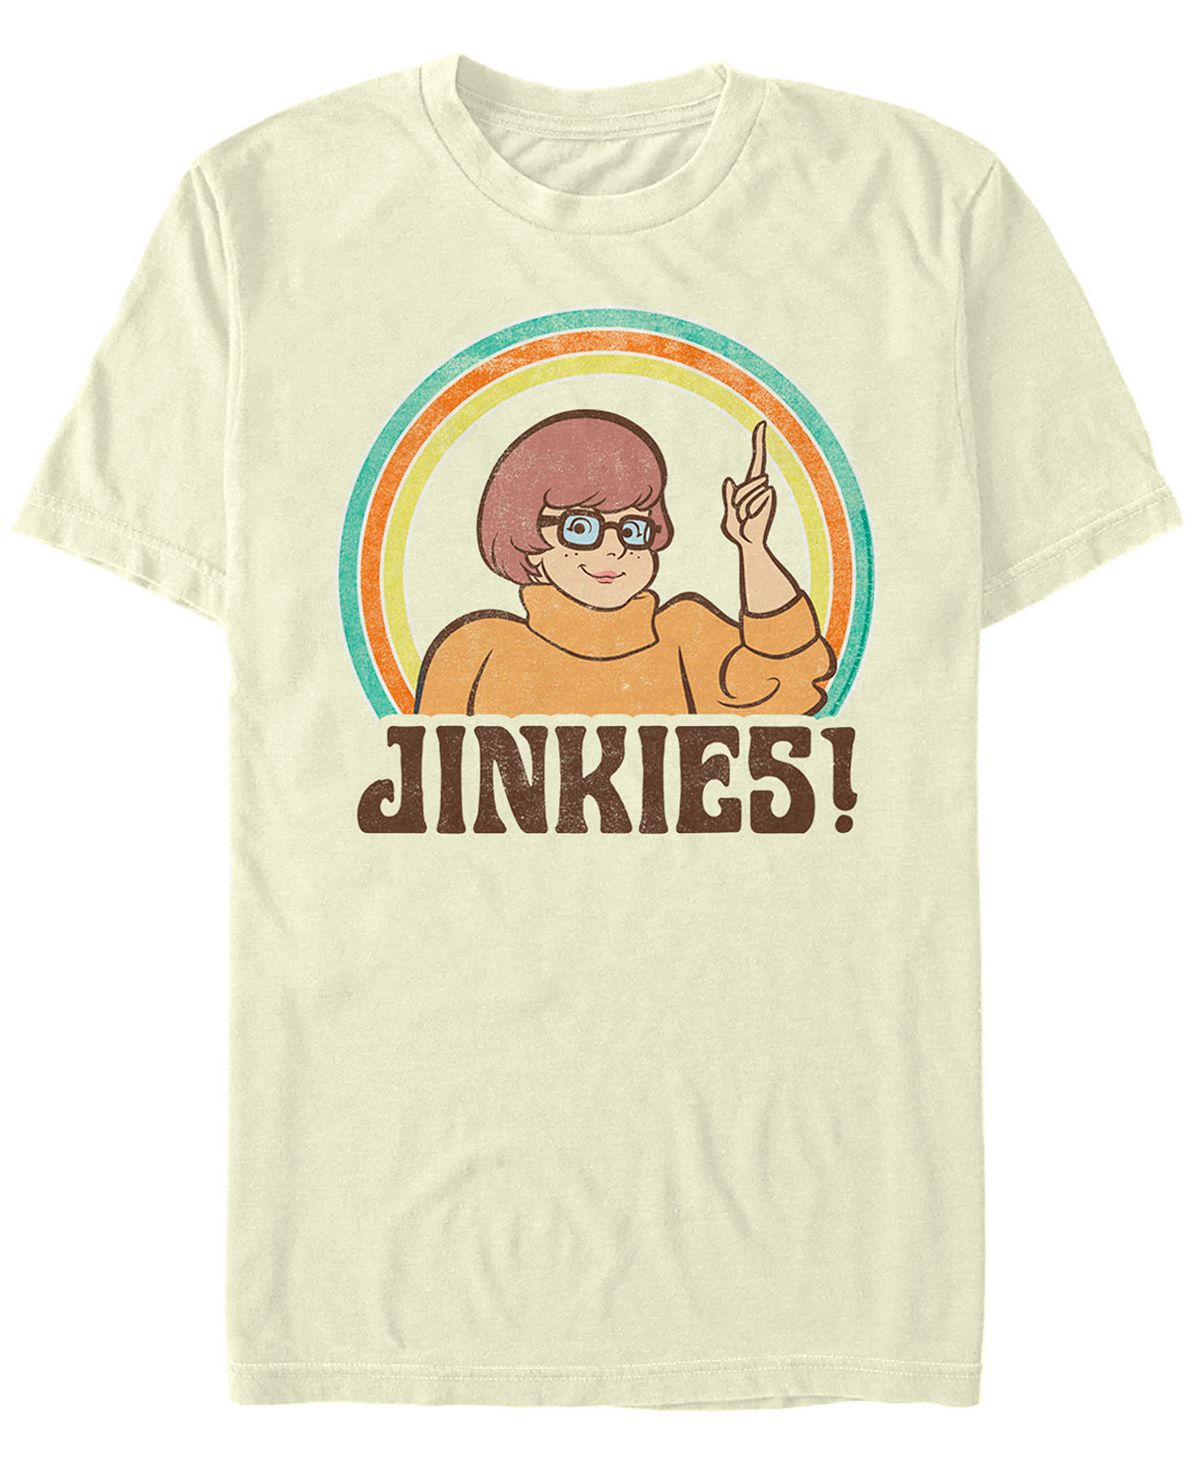 Мужская футболка с коротким рукавом Scooby-Doo Velma Jinkies Fifth Sun мужская футболка с коротким рукавом scaredy shaggy zoinks scooby doo fifth sun черный